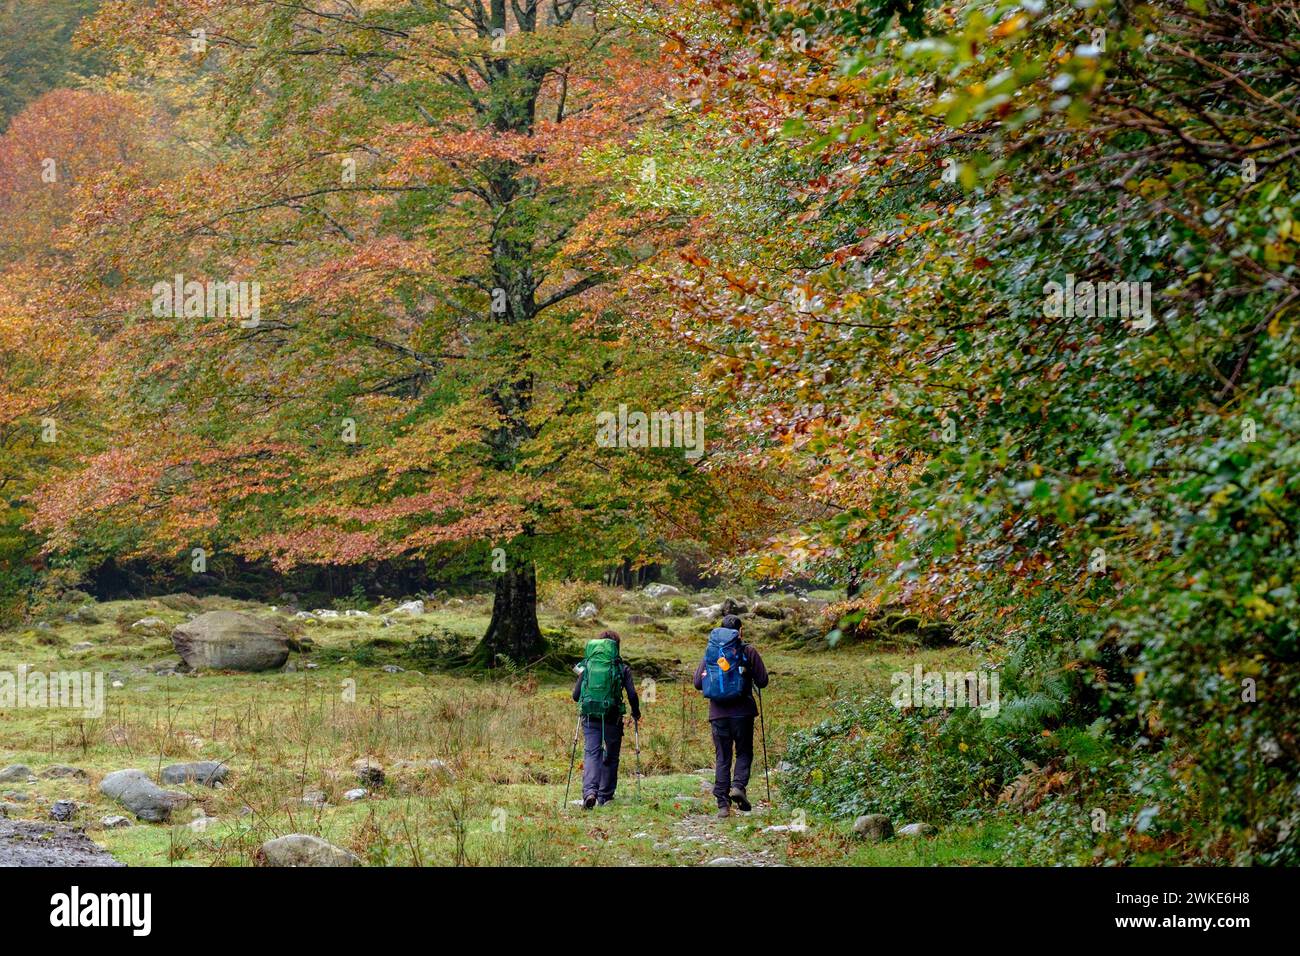 bosque de Bordes, valle de Valier -Riberot-, Parque Natural Regional de los Pirineos de Ariège, cordillera de los Pirineos, Francia. Stock Photo